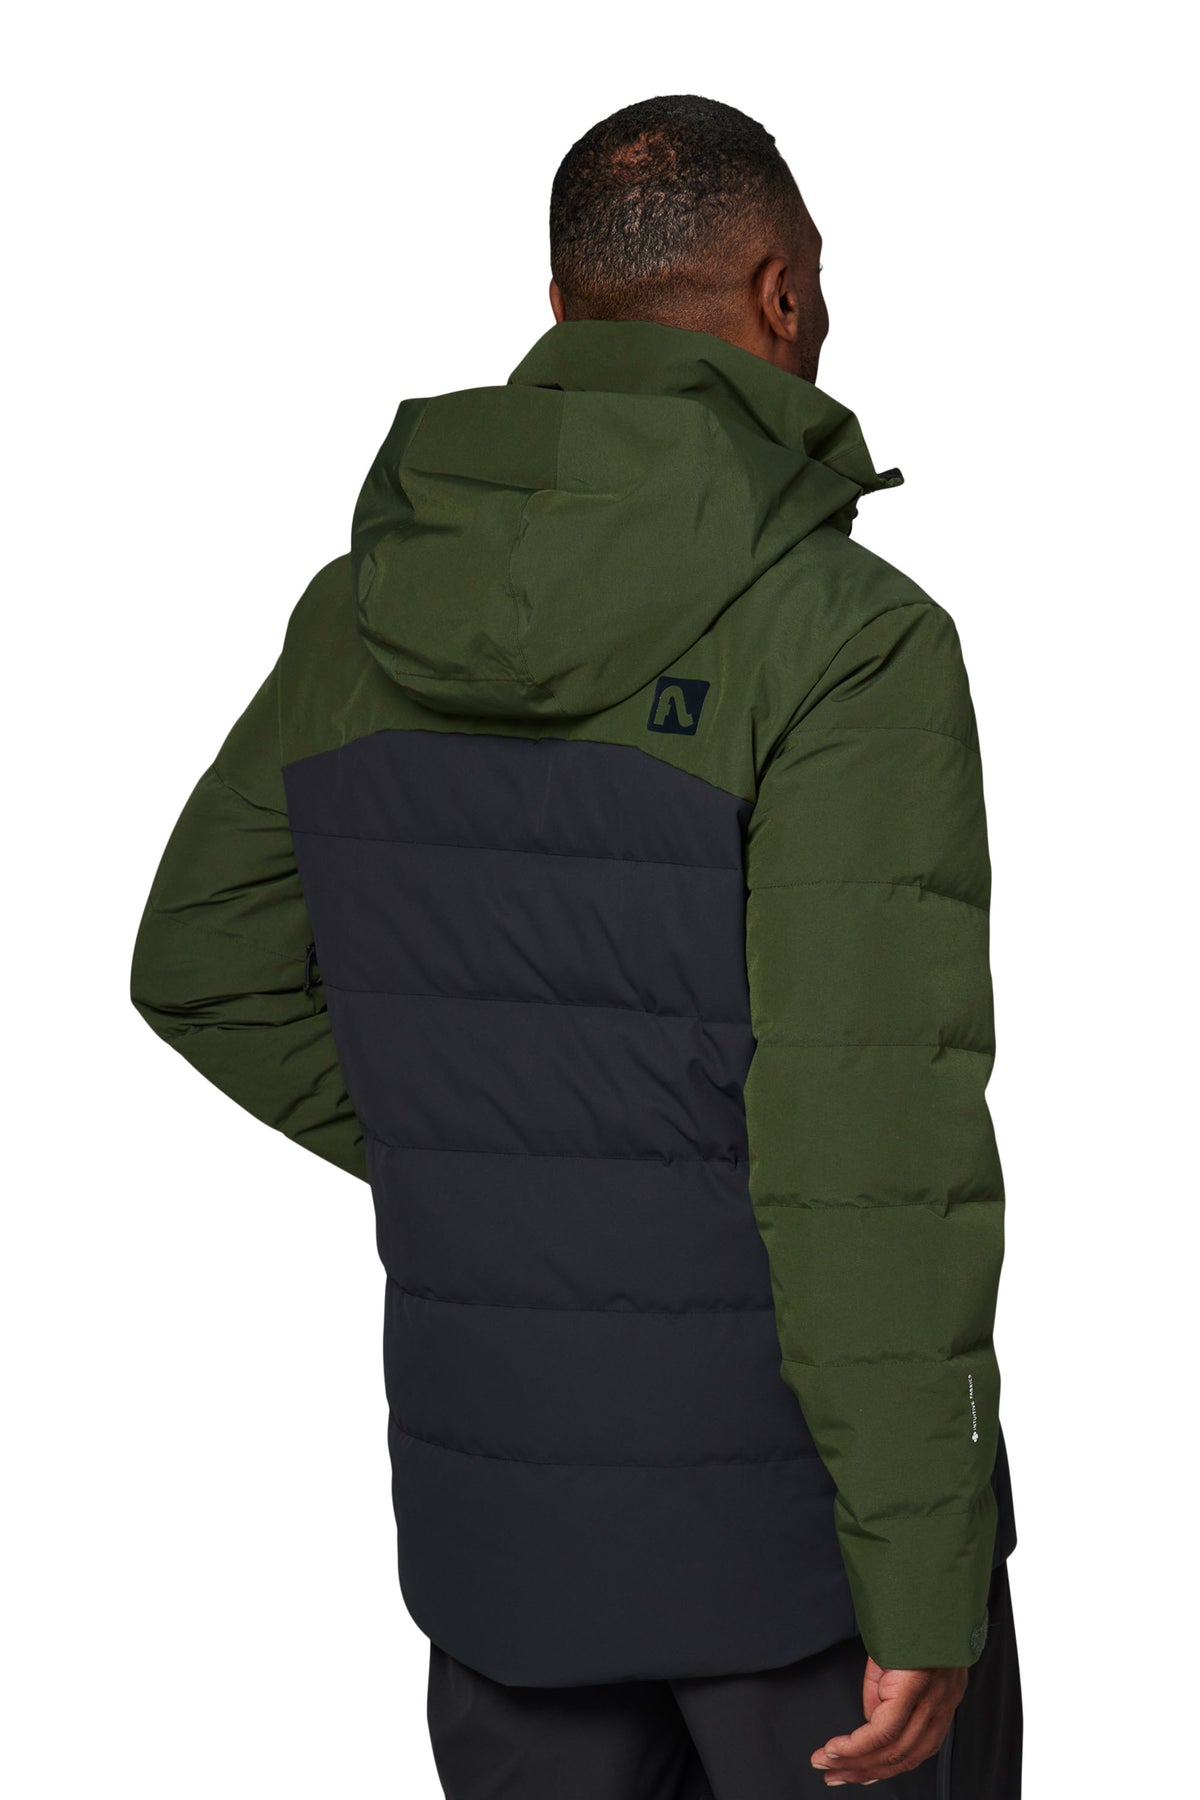 GG ripstop fabric zip jacket